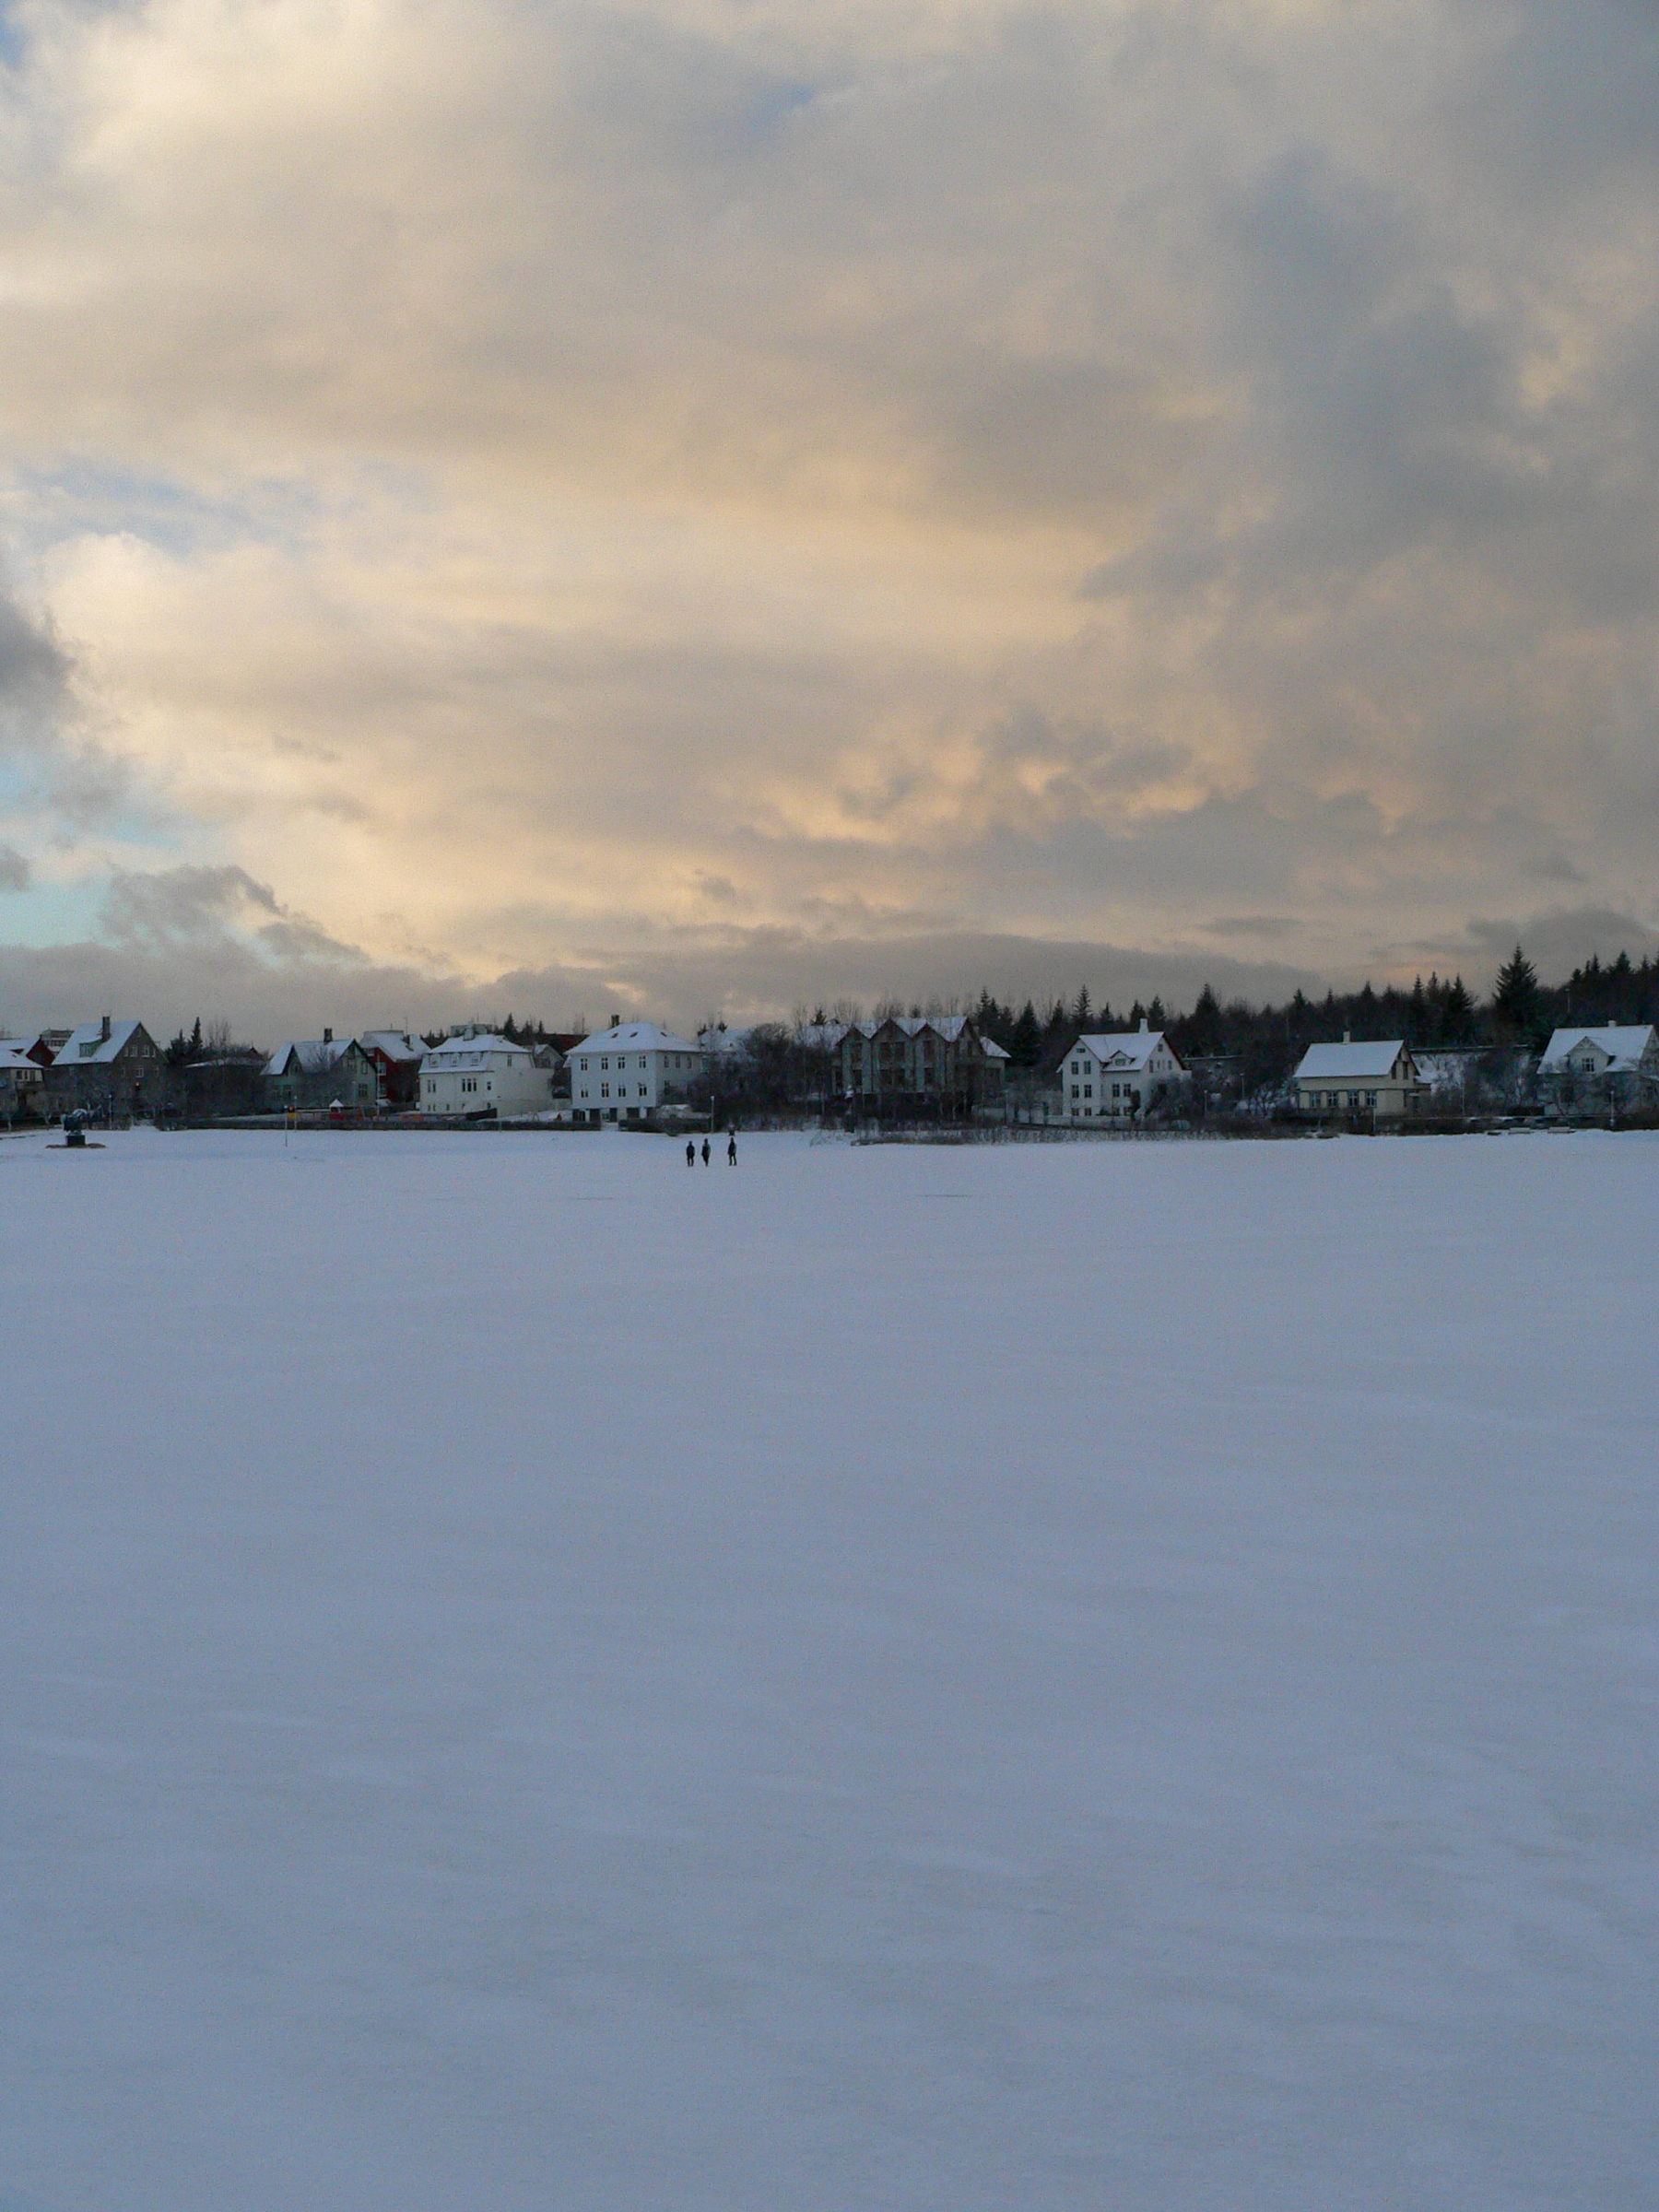 The frozen over pond in Reykjavík city centre